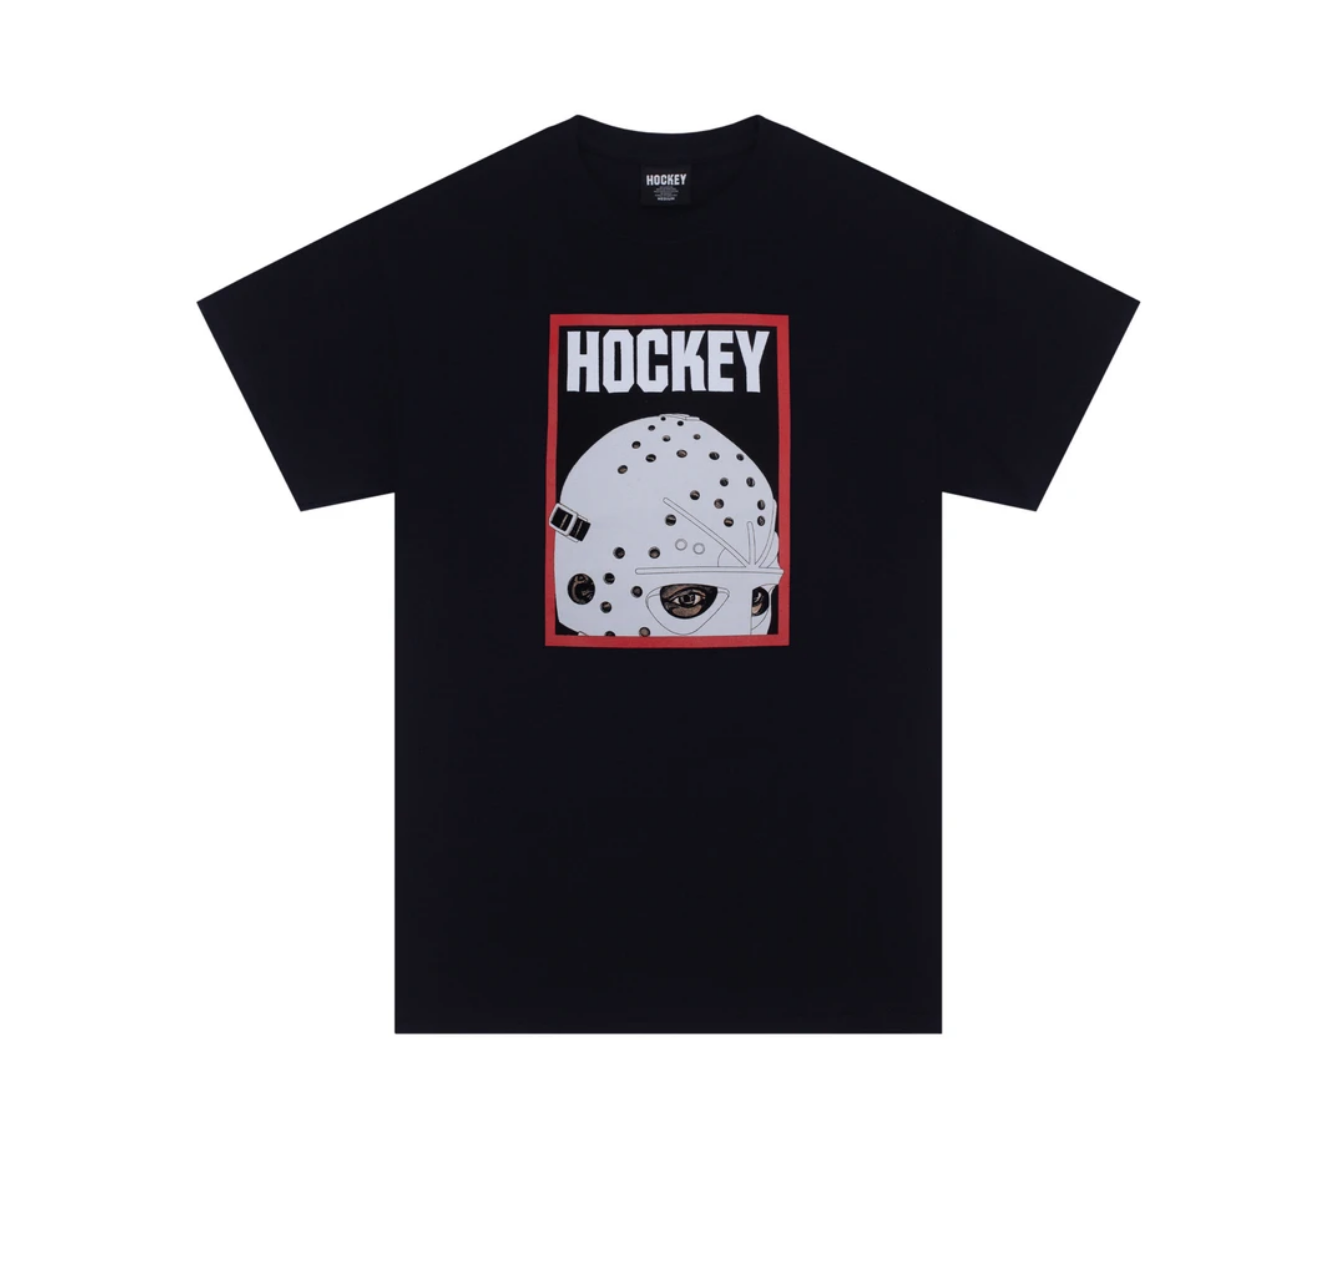 Hockey Half Mask Black - APB Skateshop LLC.